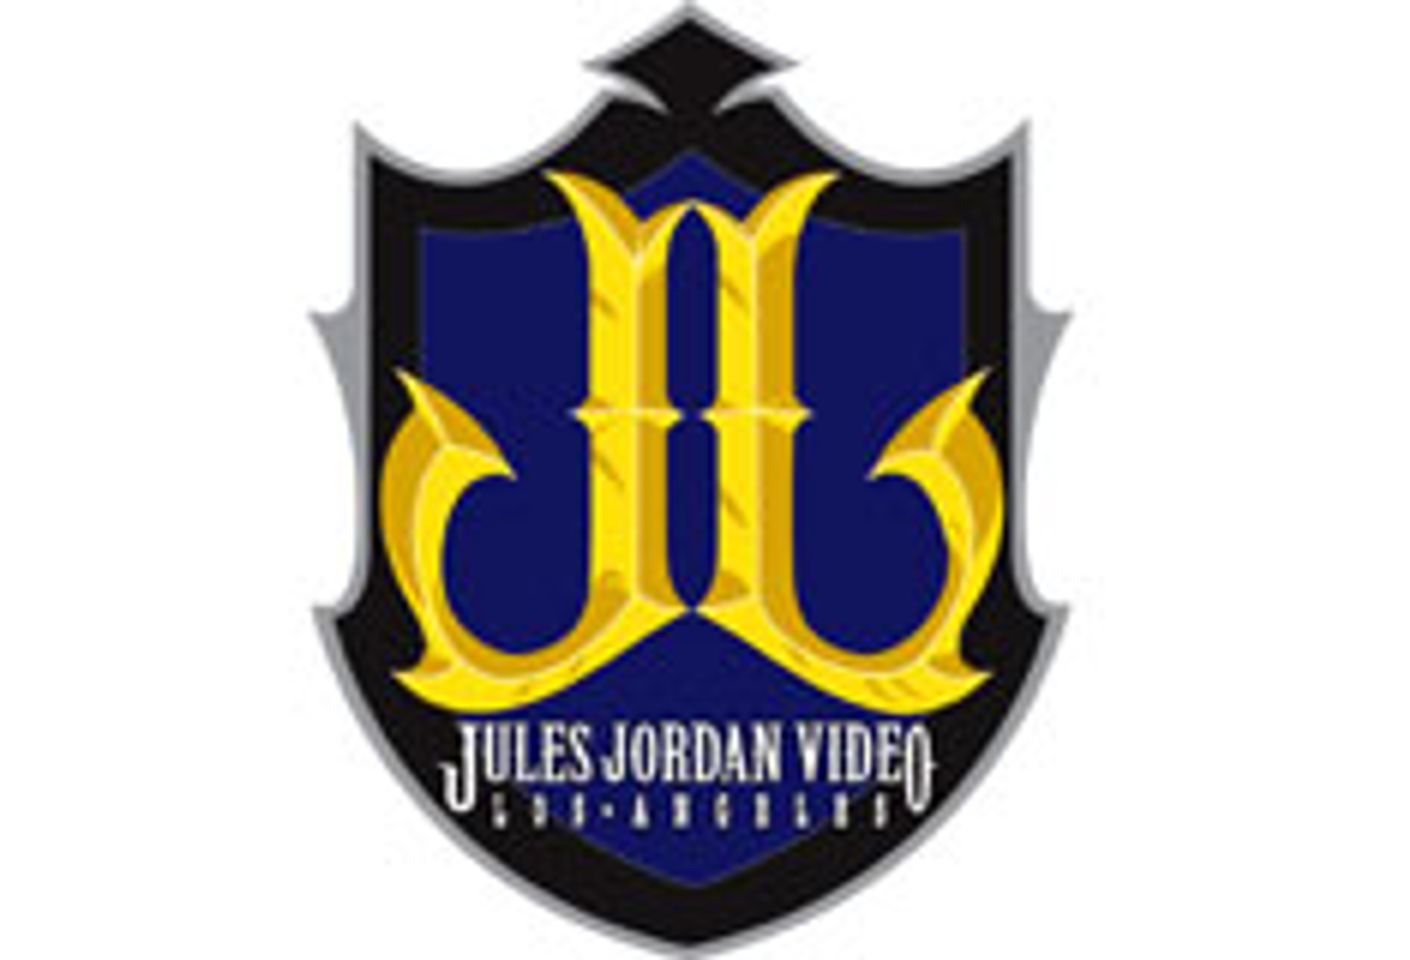 Jules Jordan Video Signs John